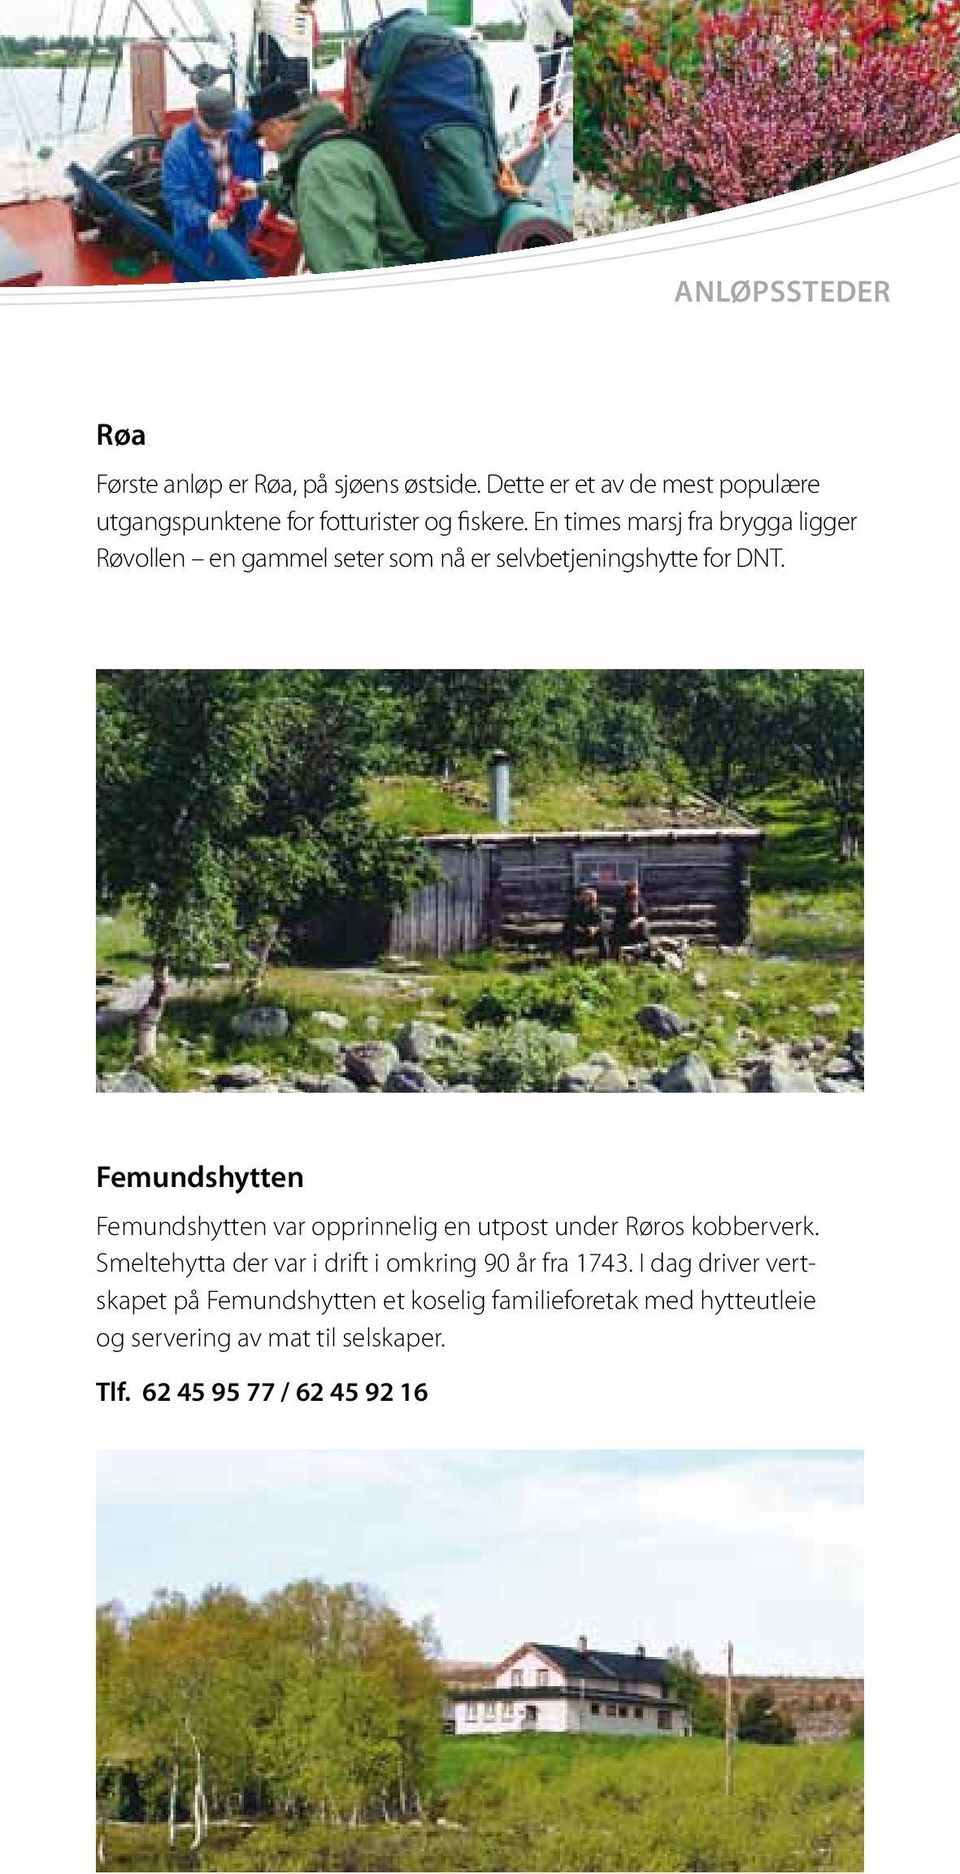 En times marsj fra brygga ligger Røvollen en gammel seter som nå er selvbetjenings hytte for DNT.